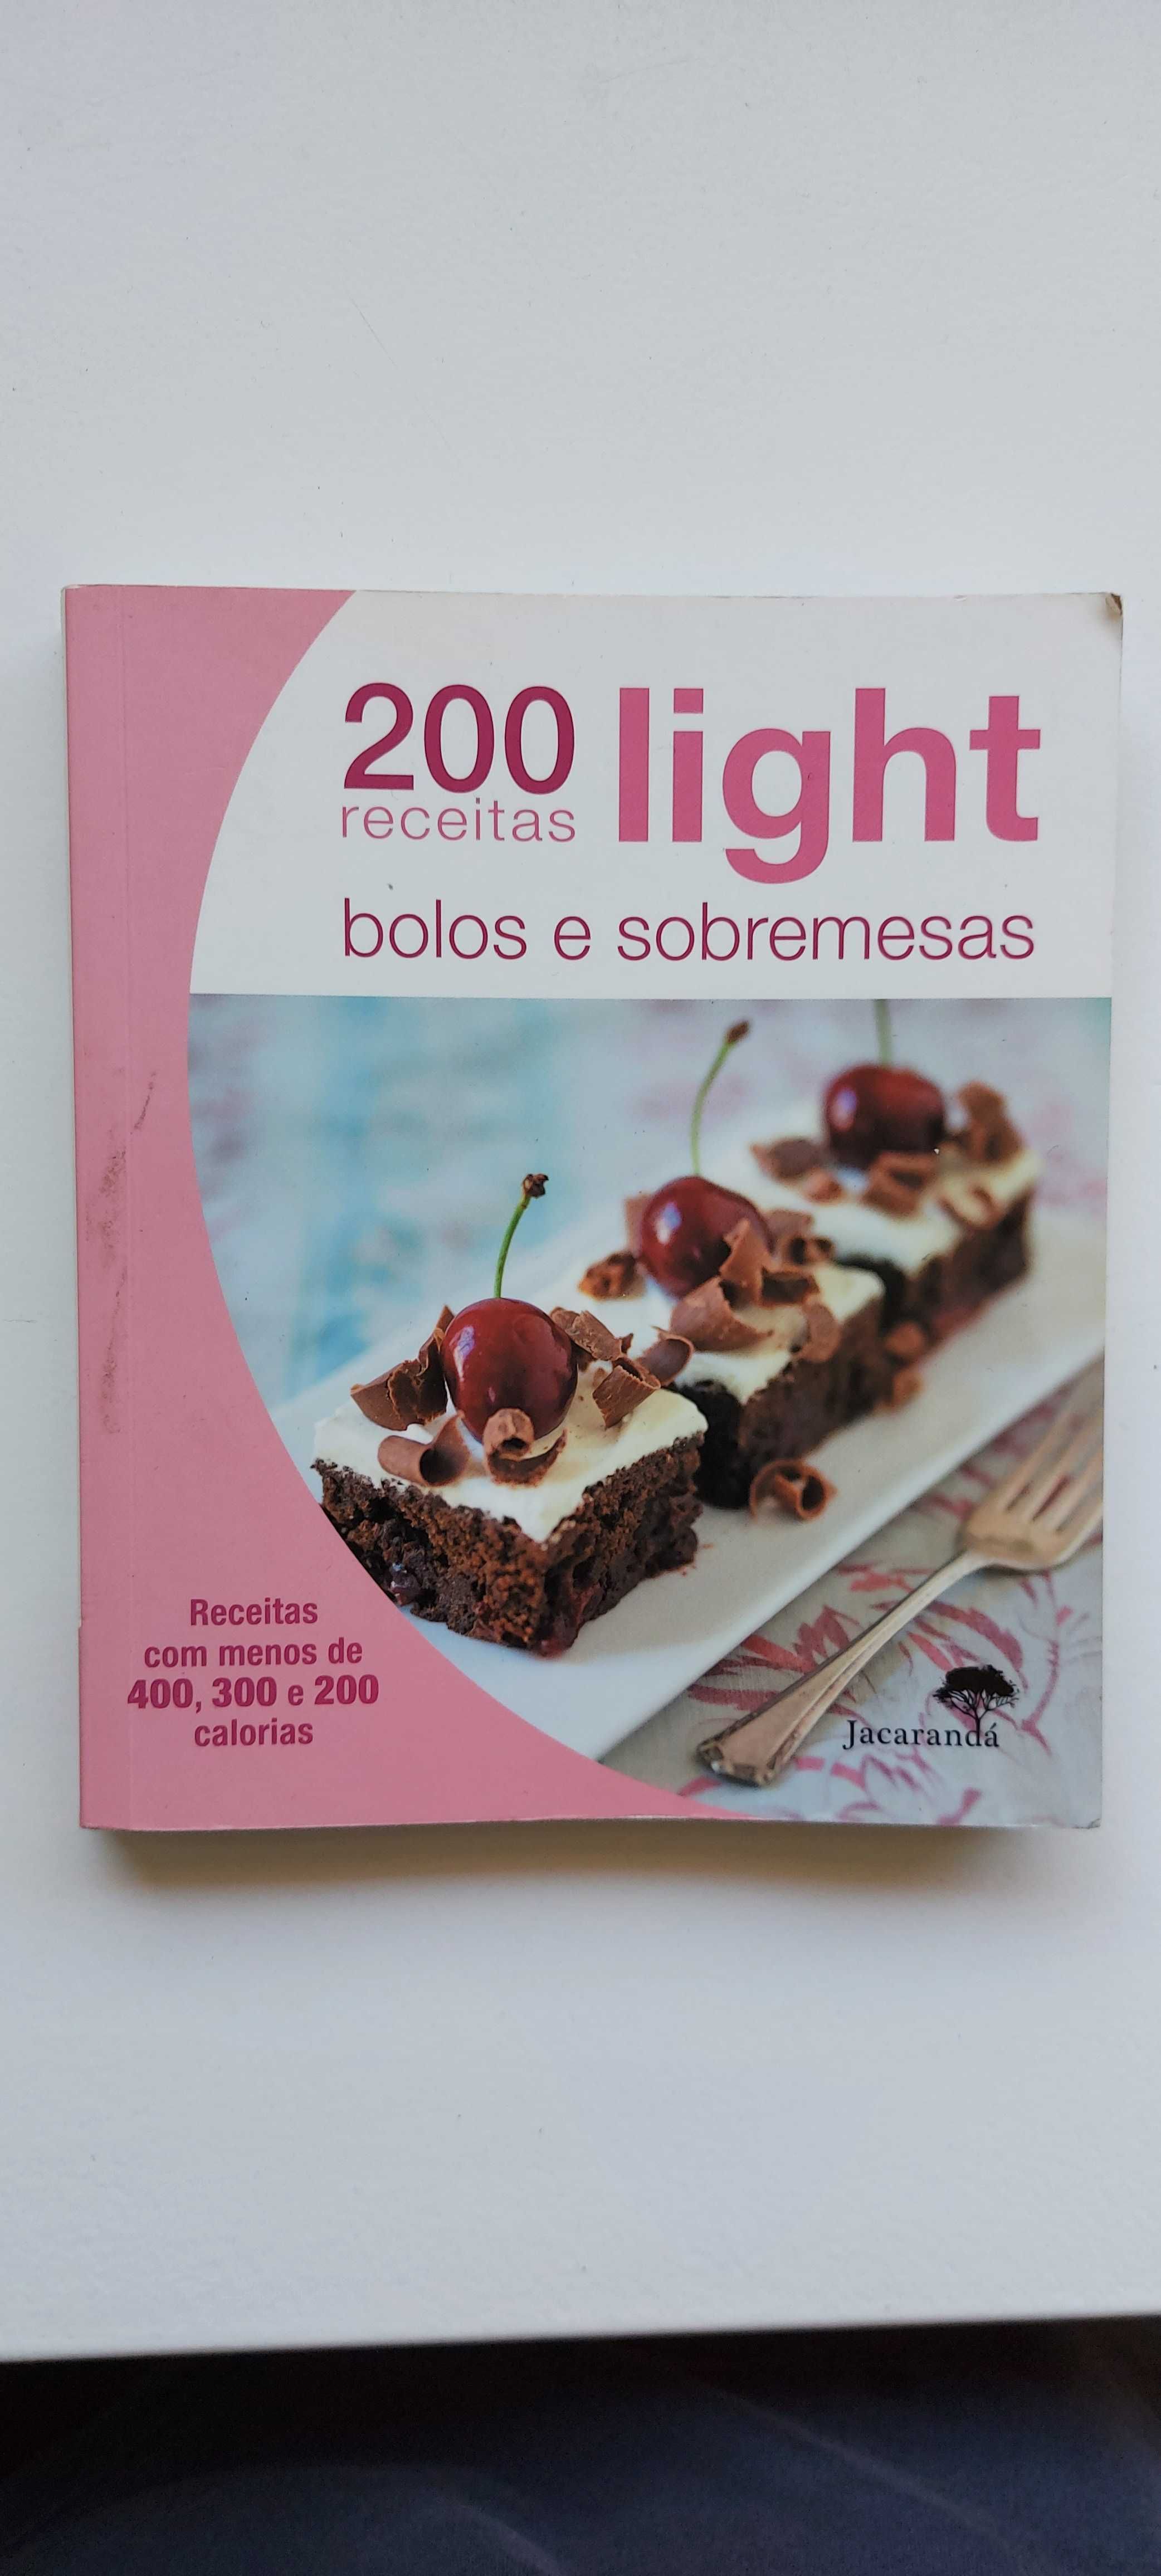 Livro - 200 receitas light - Bolos e sobremesas